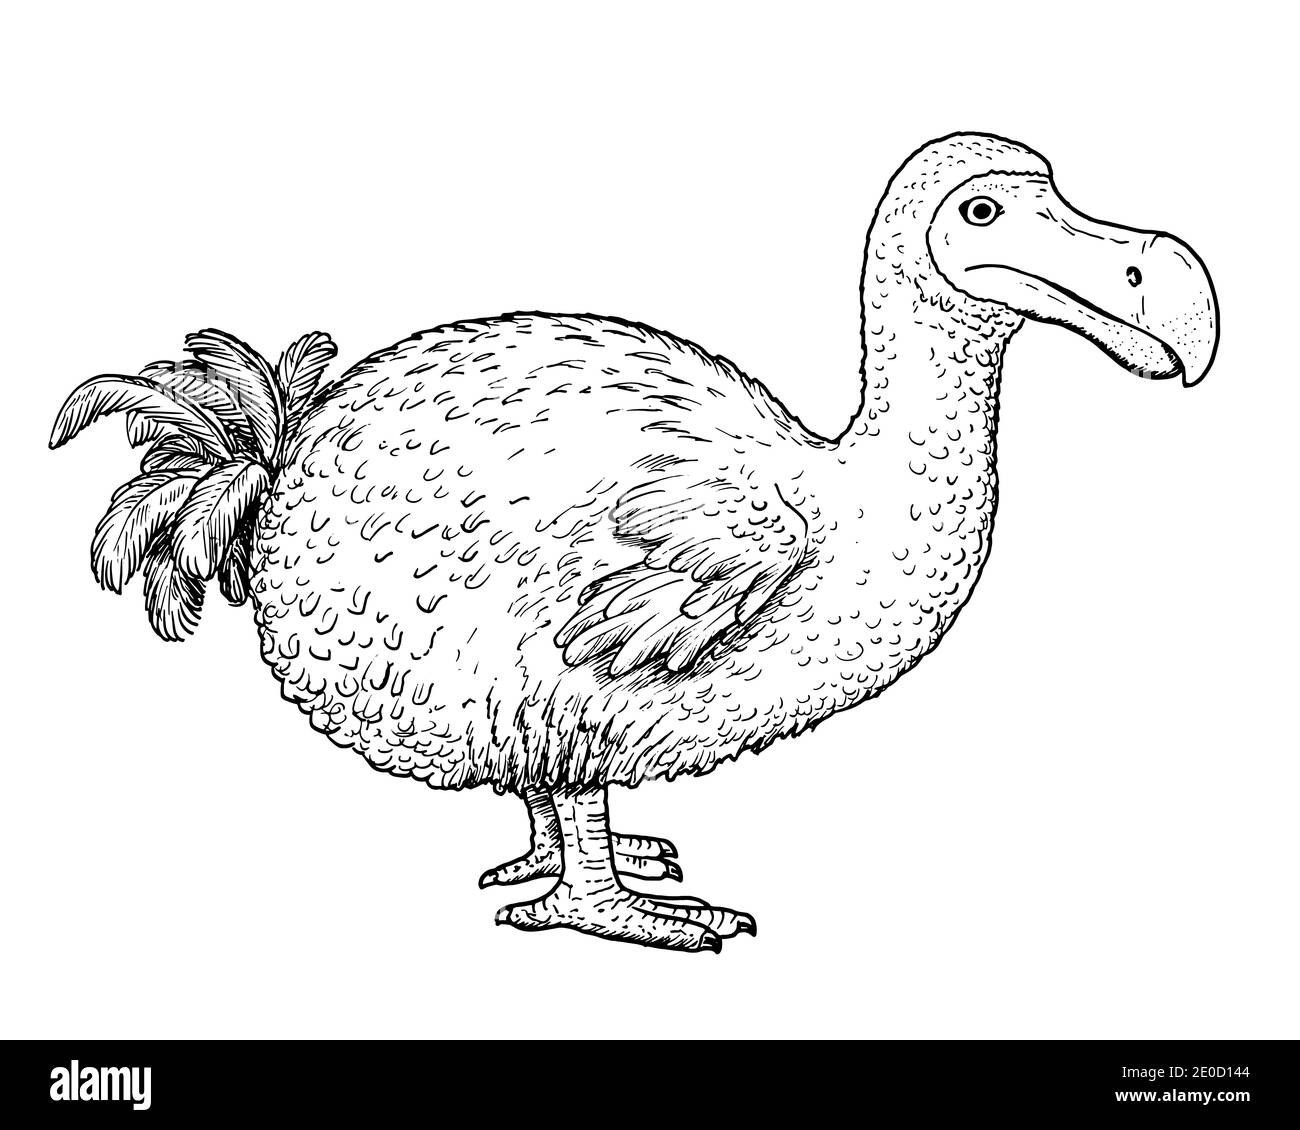 Dodo bird stock vector images